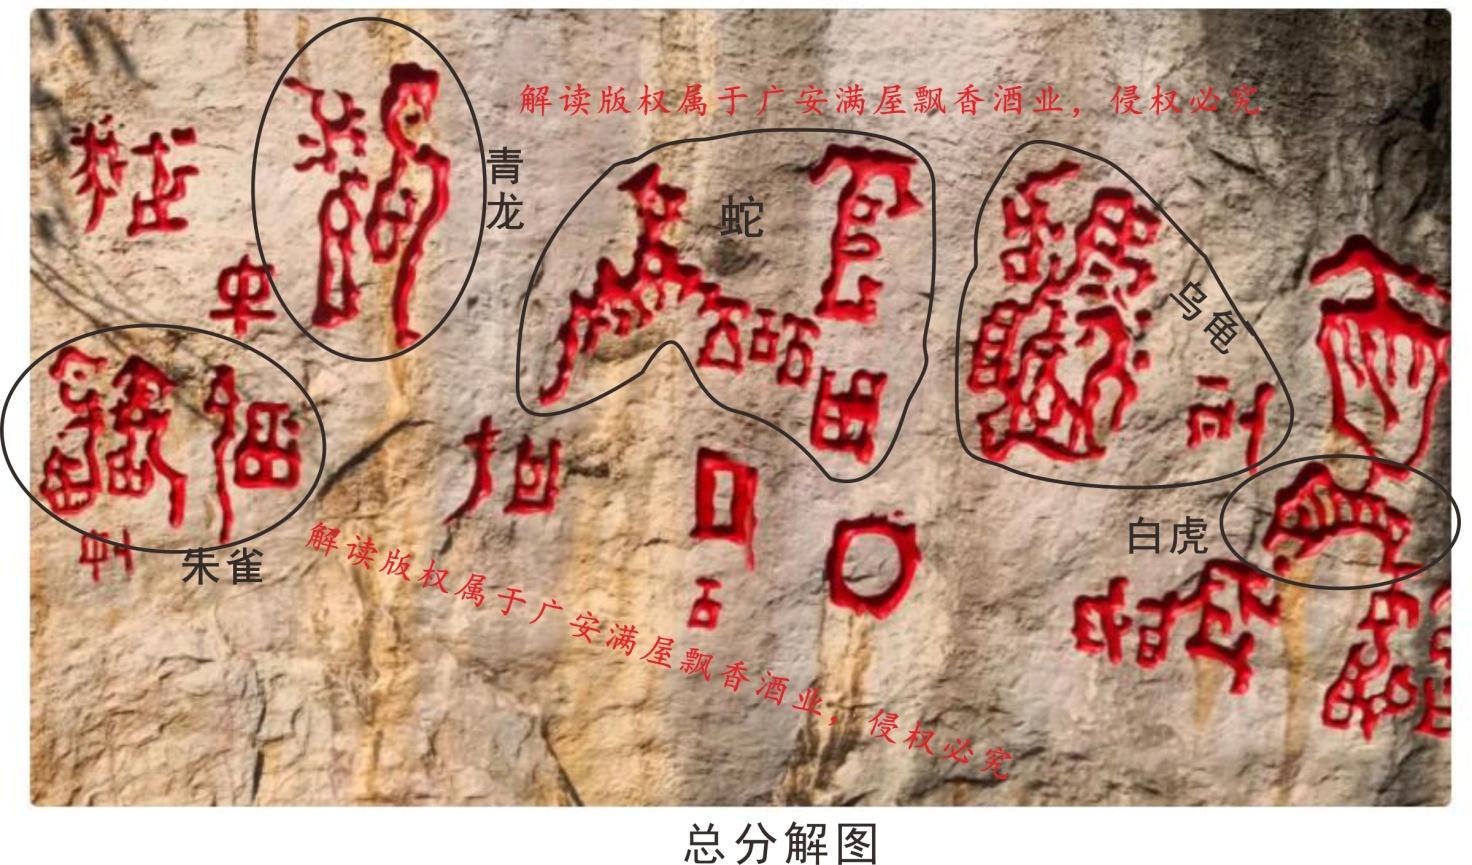 长松：贵州藏字石游记（组图） | 古枫树 | 凤尾云 | 中国共产党亡 | 大纪元